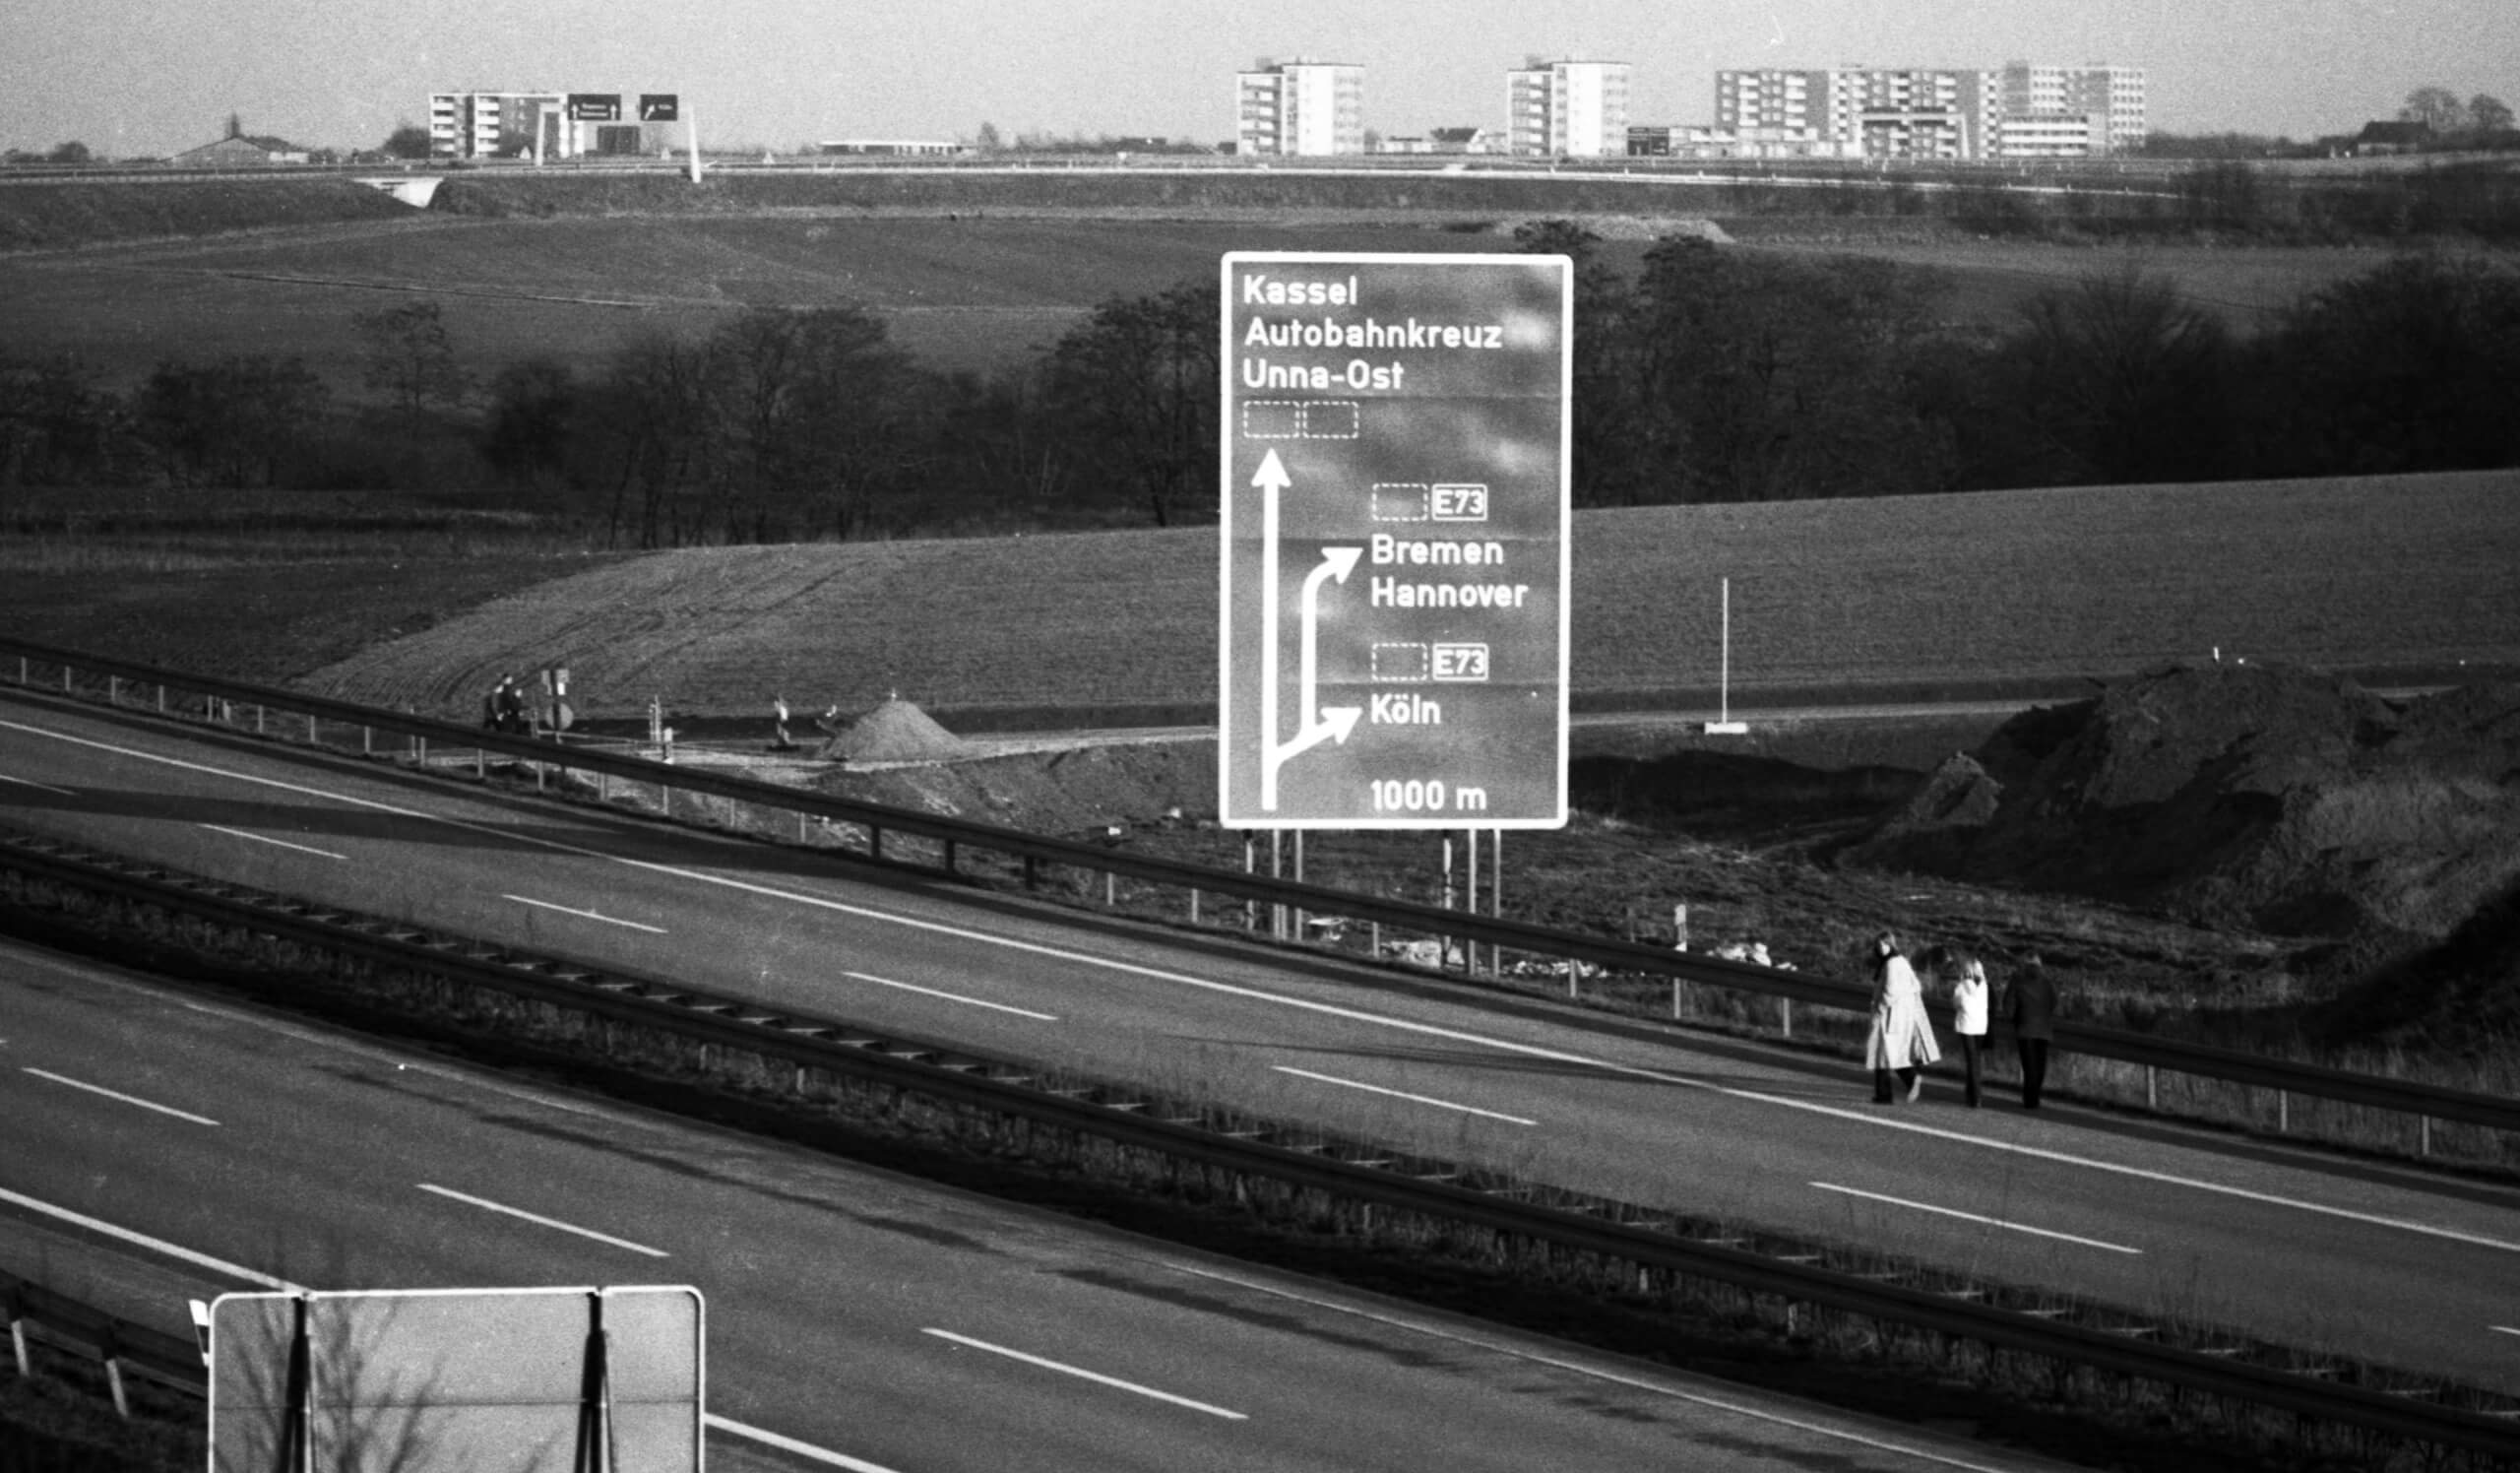 Um Energie einzusparen, könnten Deutschlands Sonntage autofrei werden – wie schon in der Ölkrise 1973. (Foto: Klaus Rose / Picture alliance)